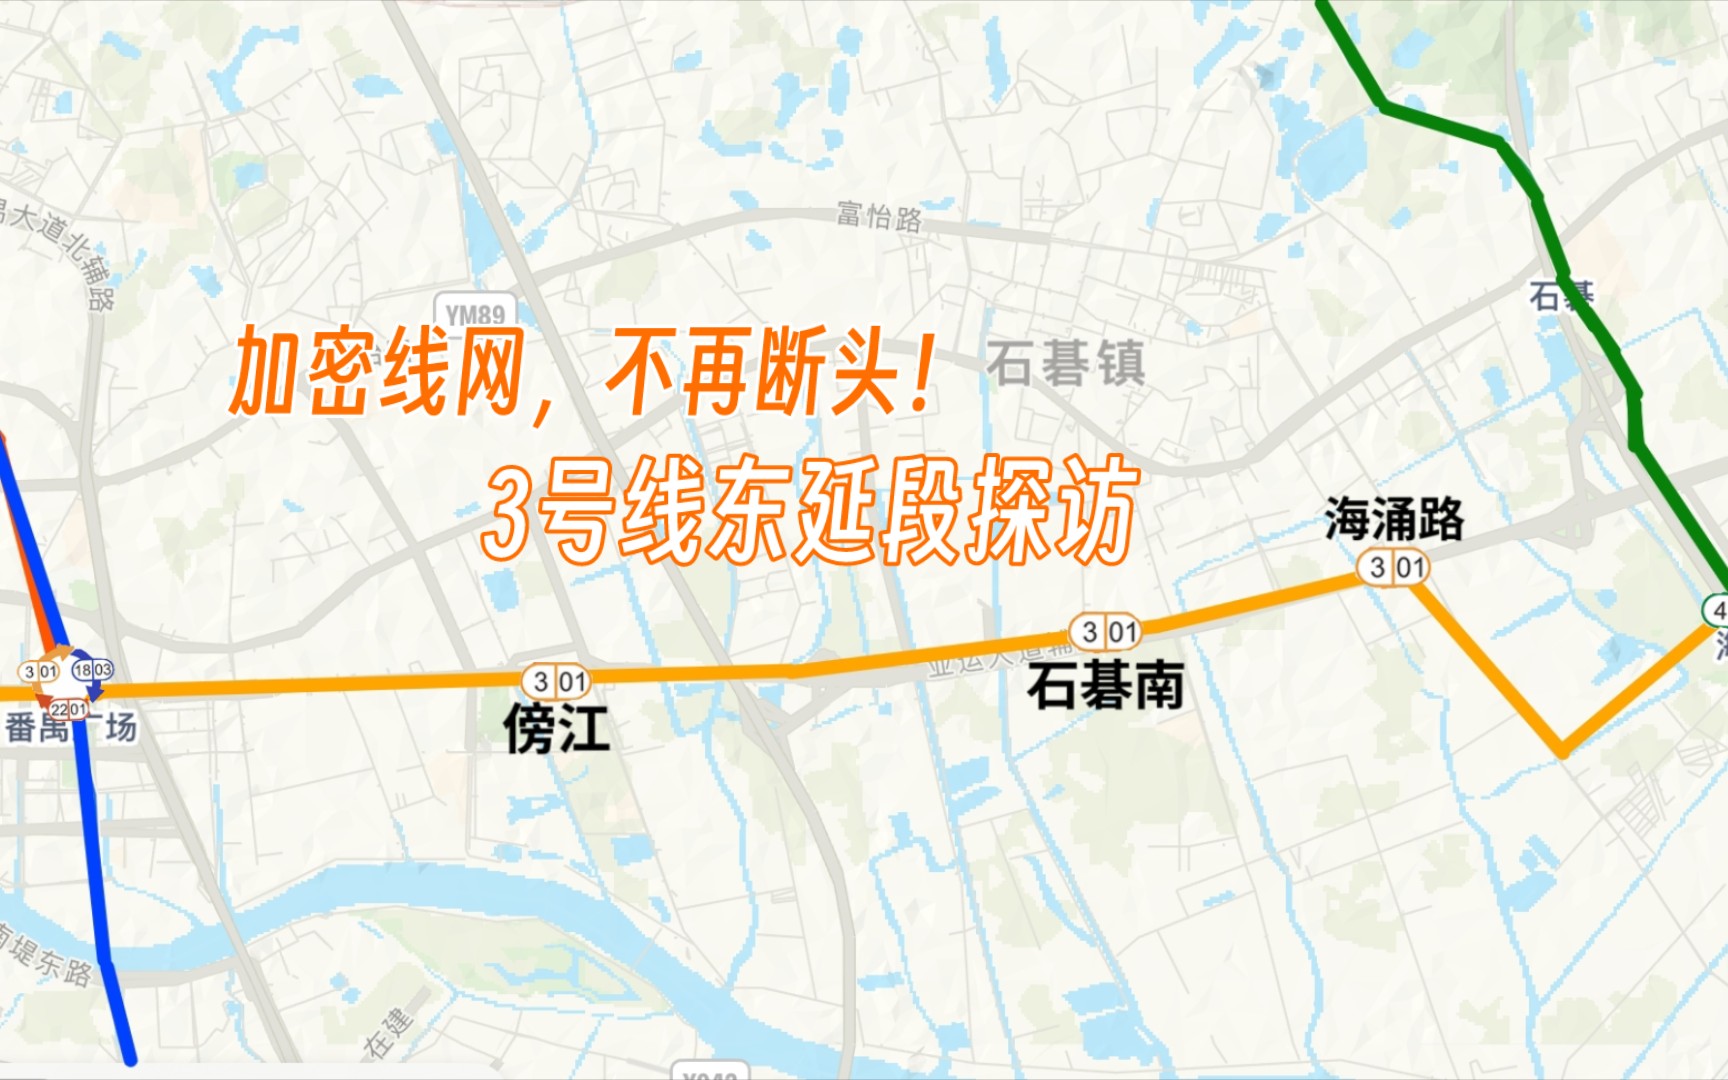 广州地铁三号线延长线图片